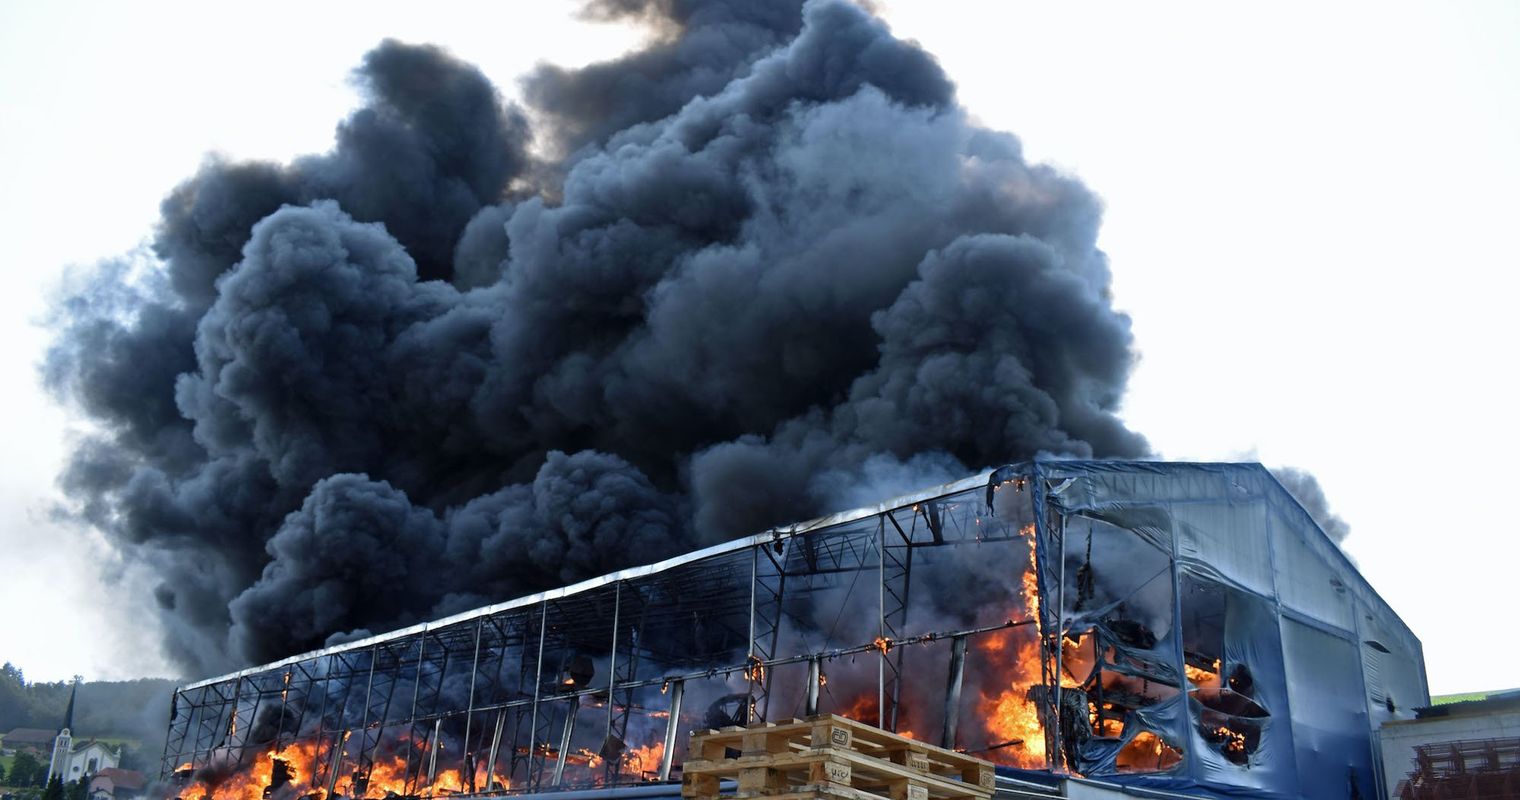 Grossbrand in Grossdietwil: So sieht die Ruine aus